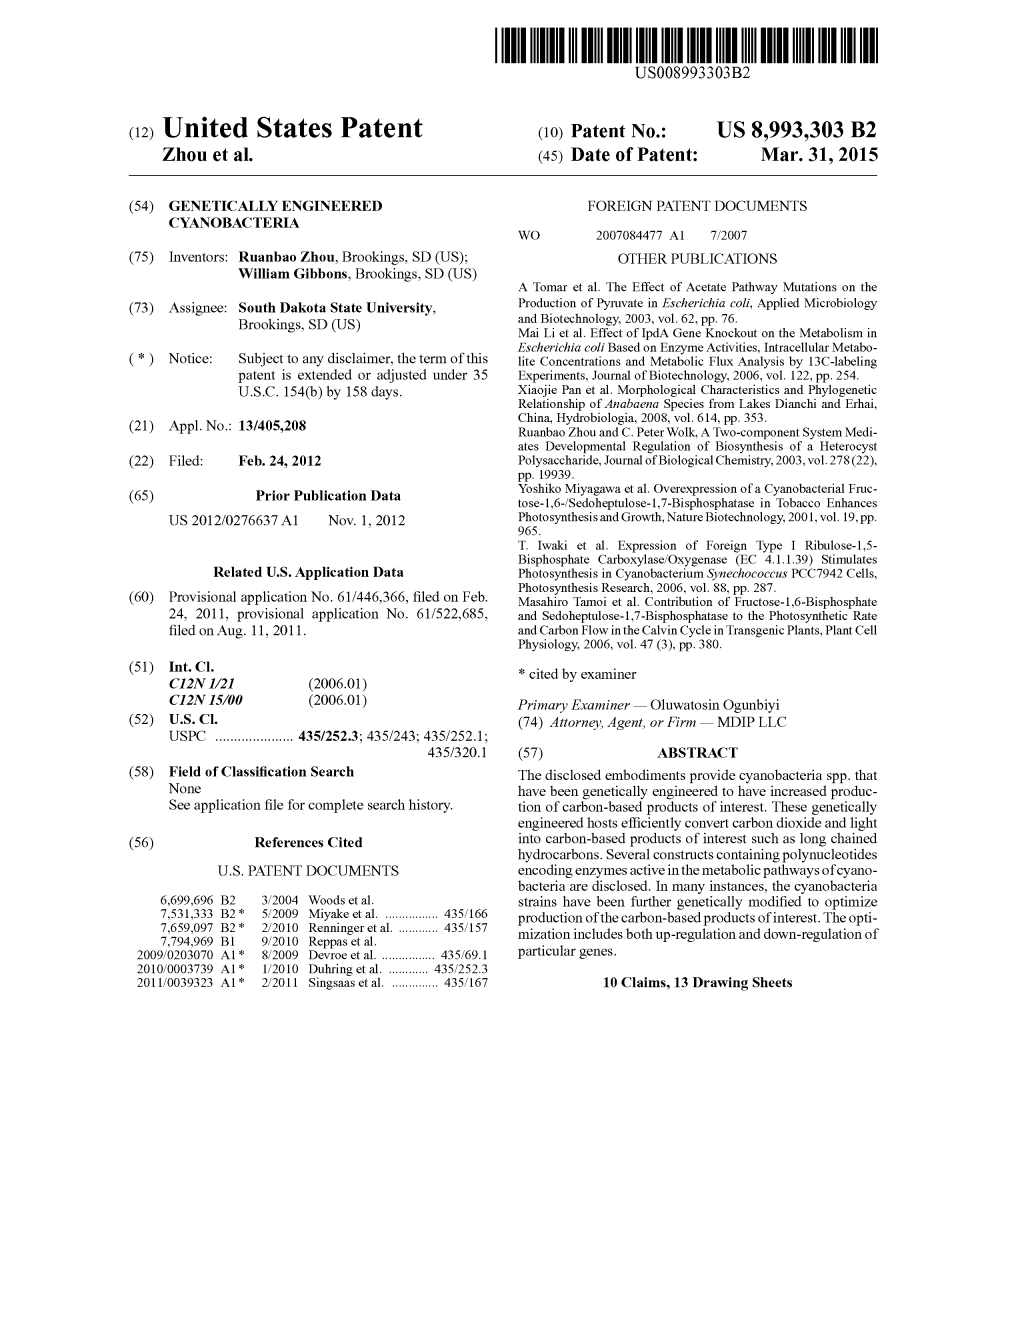 Patent (1O) Patent No.: �US 8,993,303 B2 Zhou Et Al